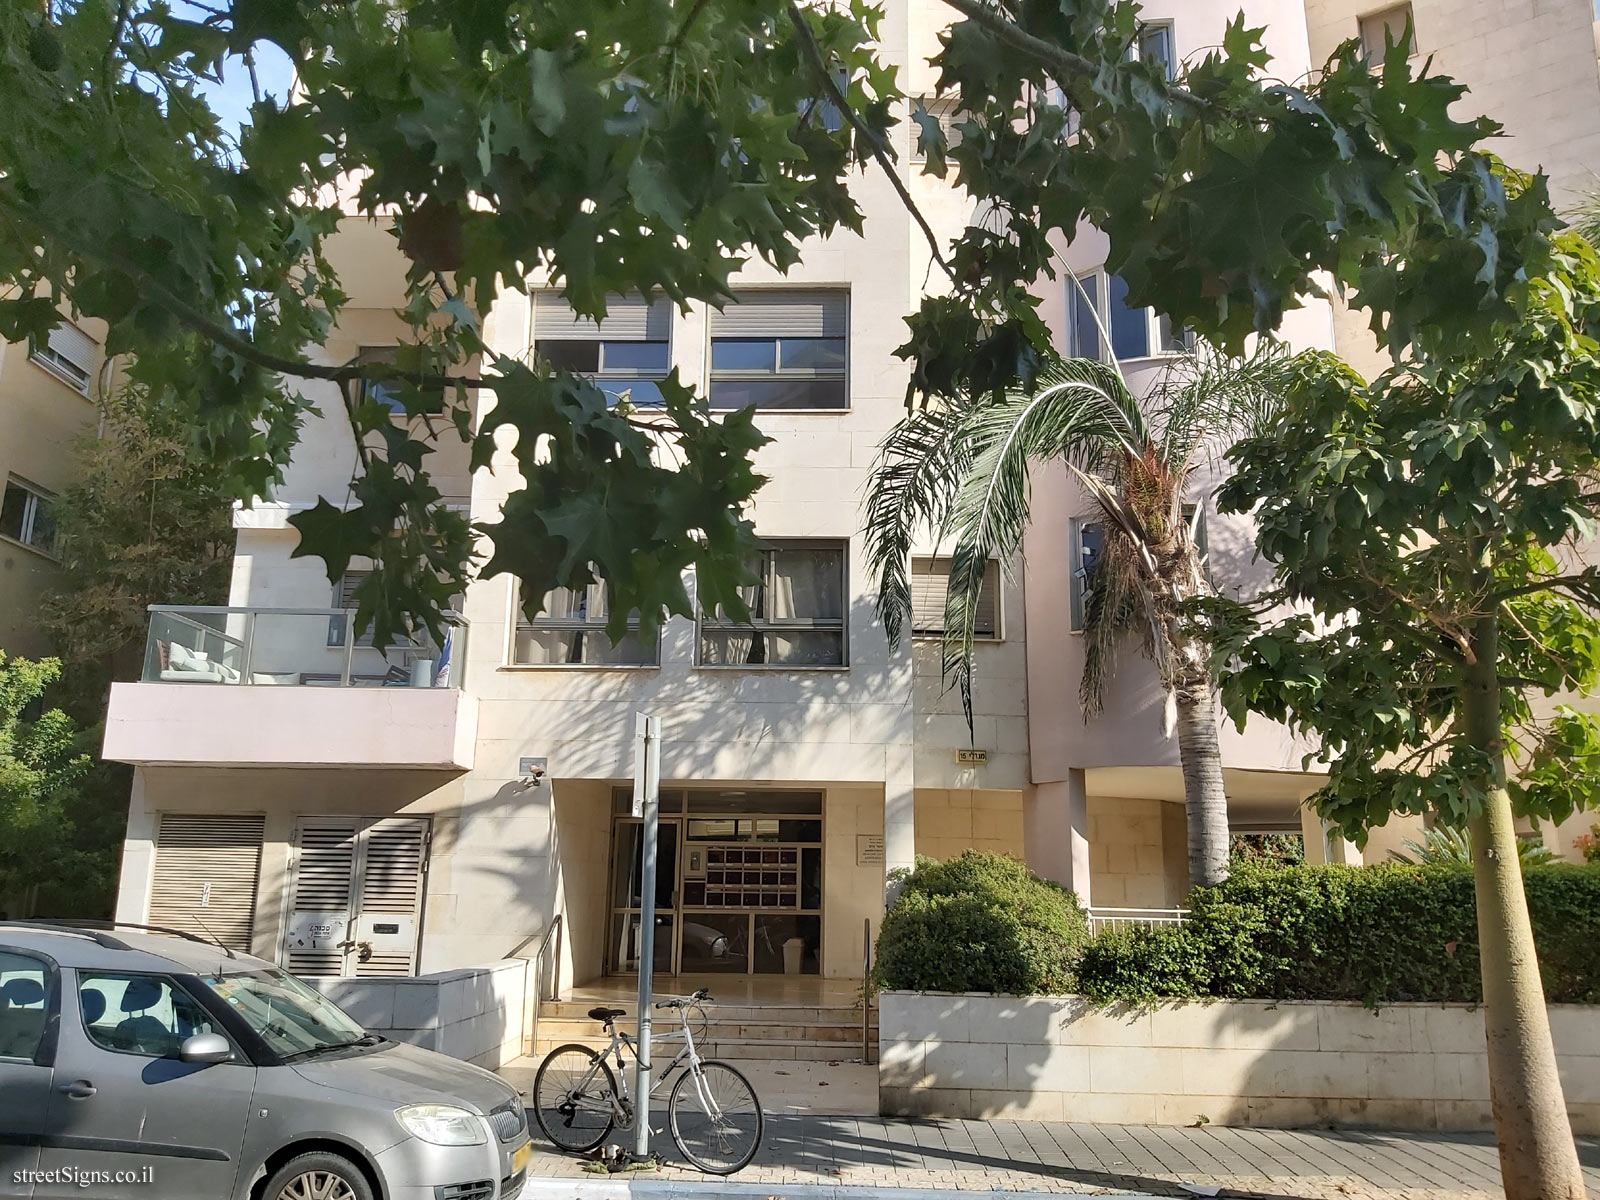 The house of Asher Barash - Mendele Mokher Sfarim St 15, Tel Aviv-Yafo, Israel